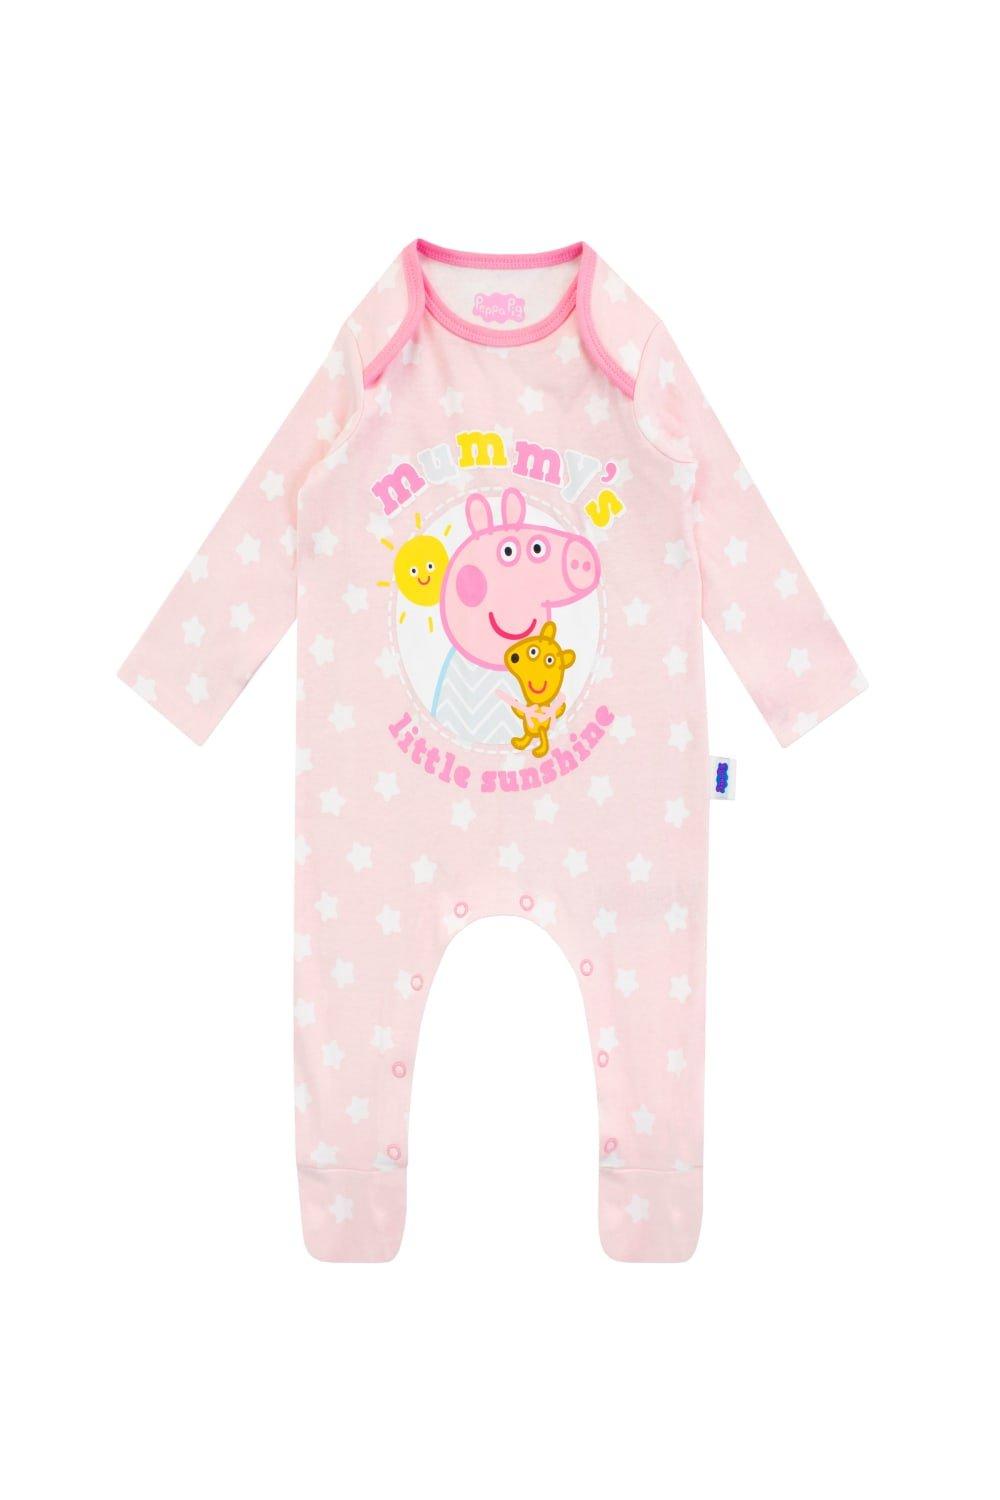 Mummy's Little Sunshine Baby Sleepsuit